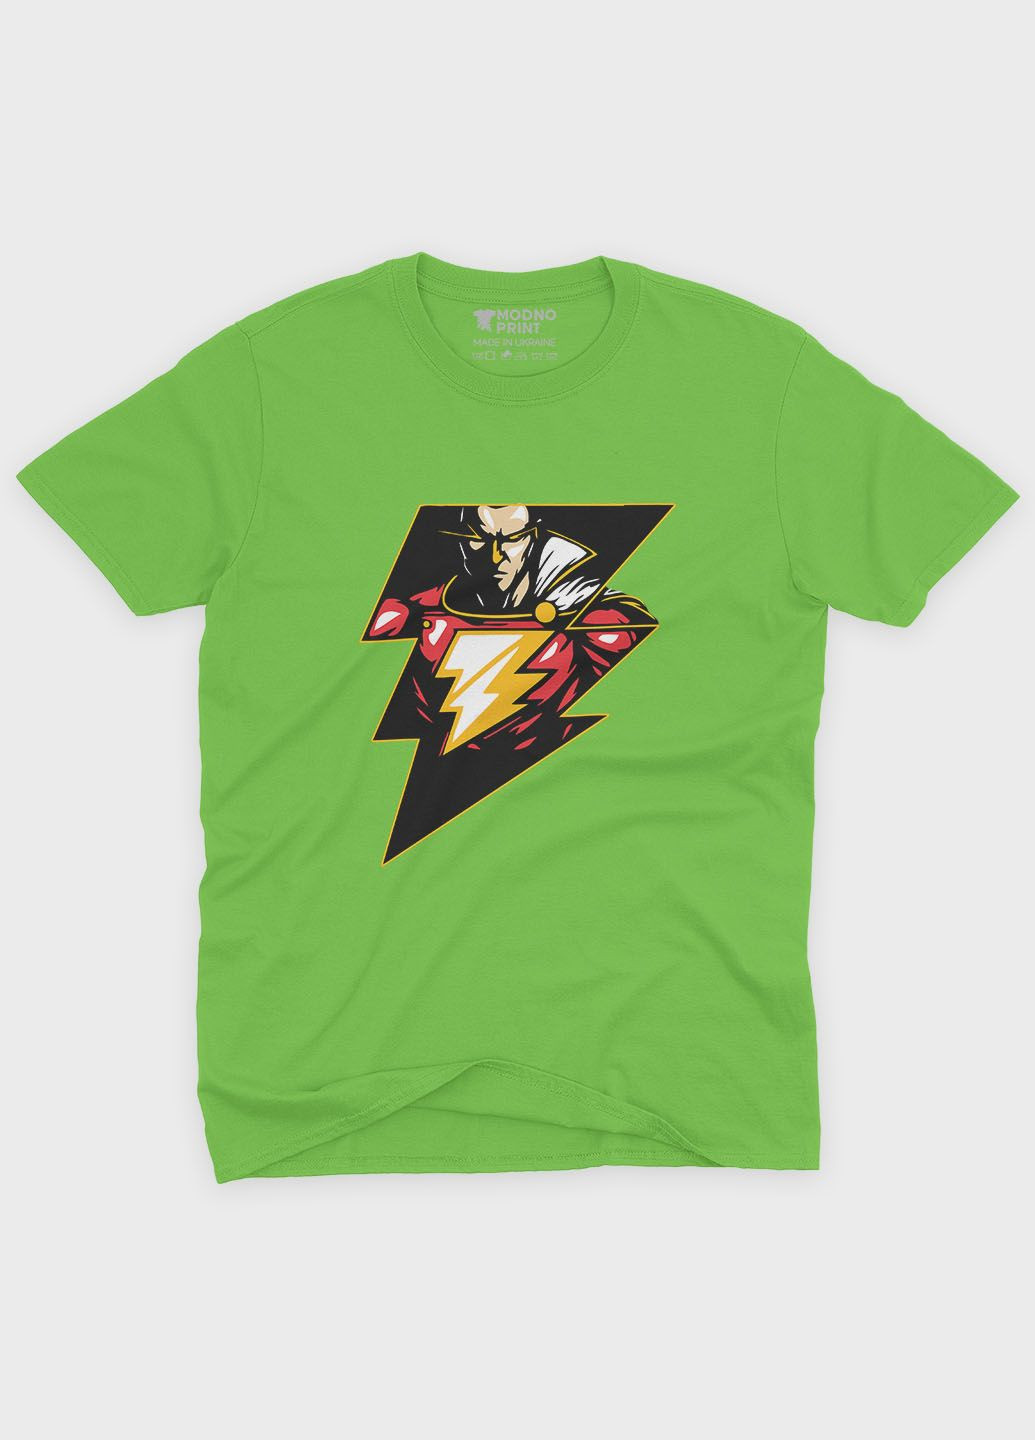 Салатова демісезонна футболка для хлопчика з принтом супергероя - шазам (ts001-1-kiw-006-012-001-b) Modno